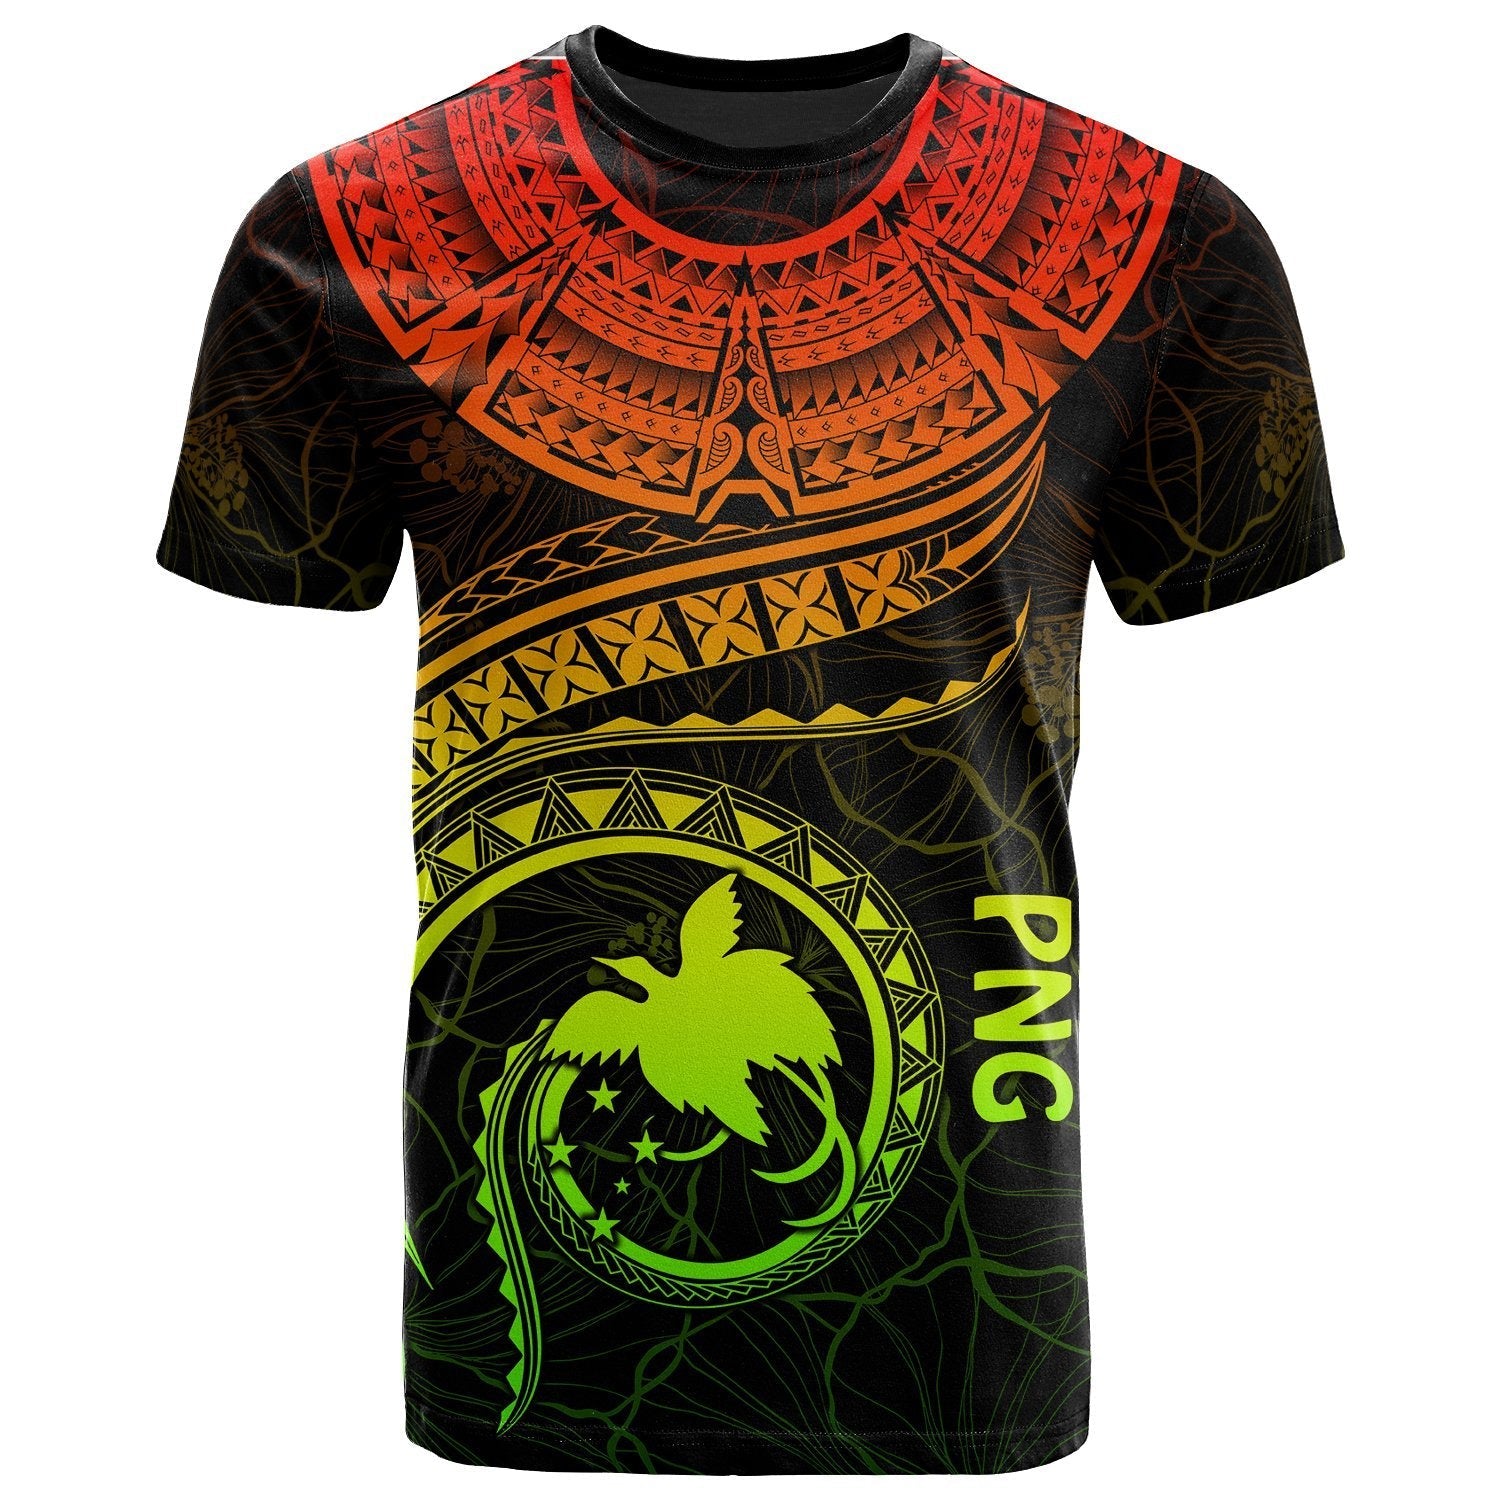 papua-new-guinea-polynesian-t-shirt-papua-new-guinea-waves-reggae